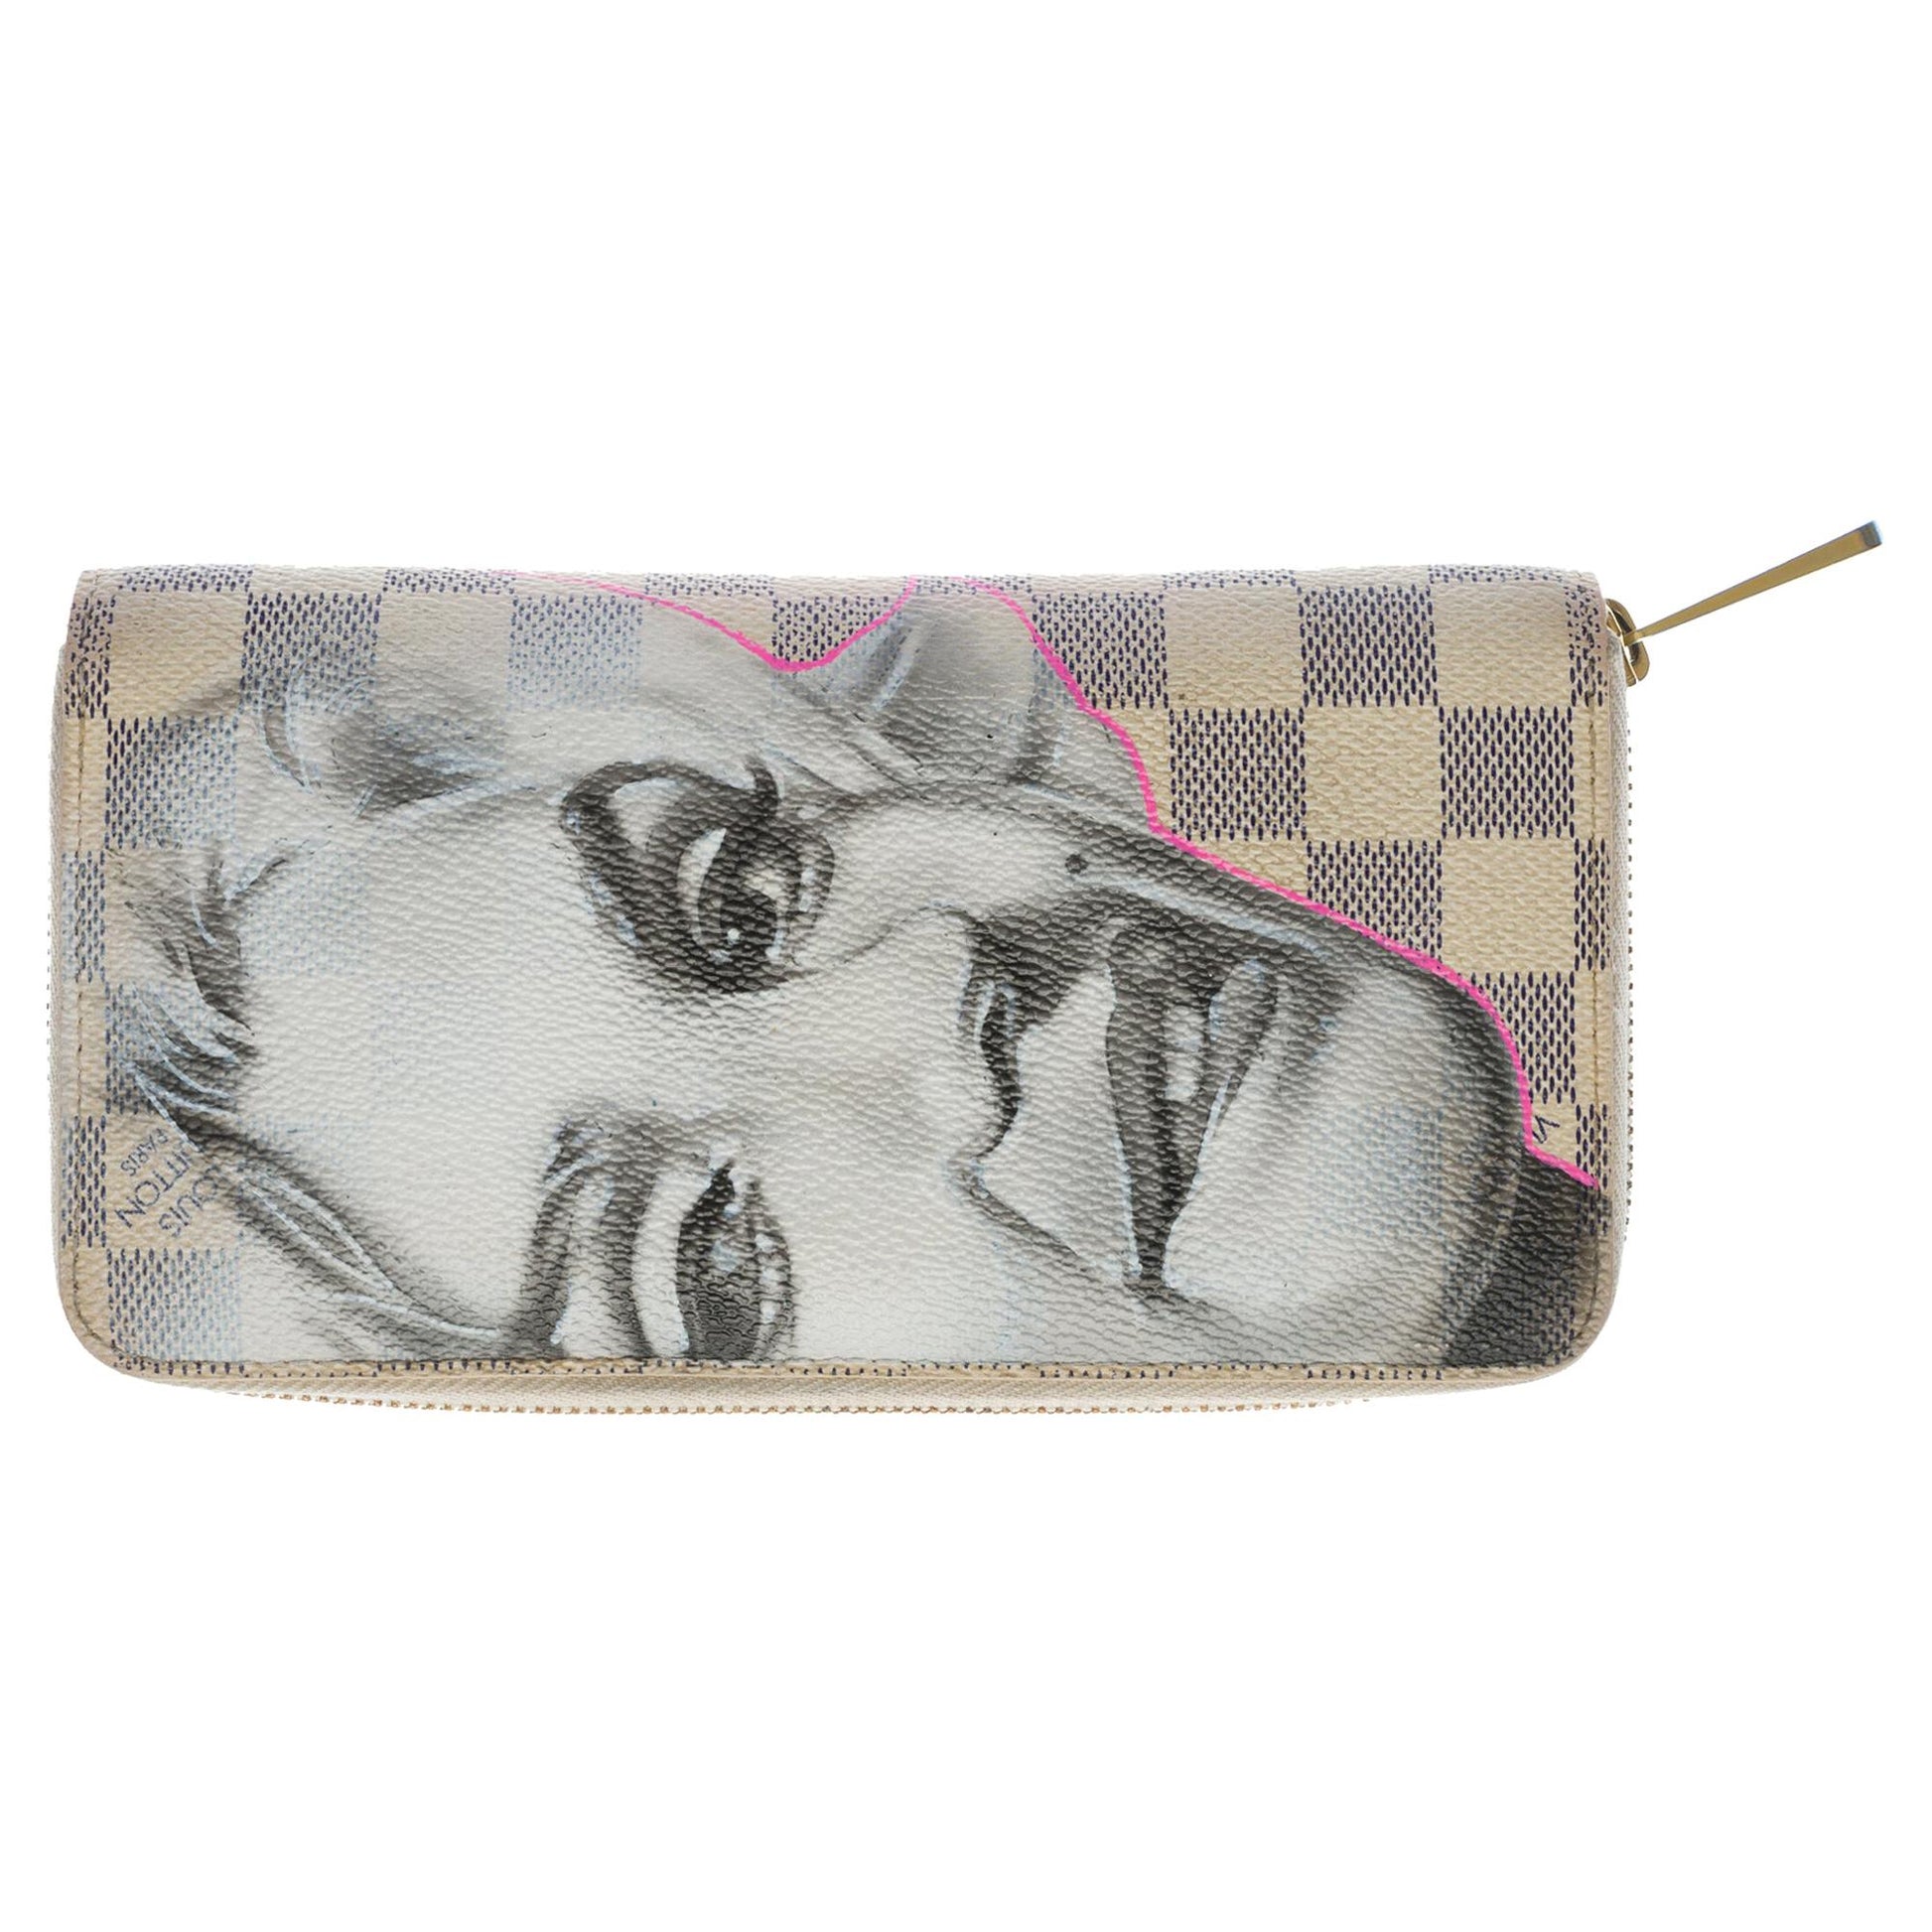 LOUIS VUITTON Customized Marilyn Monroe Zippy wallet in